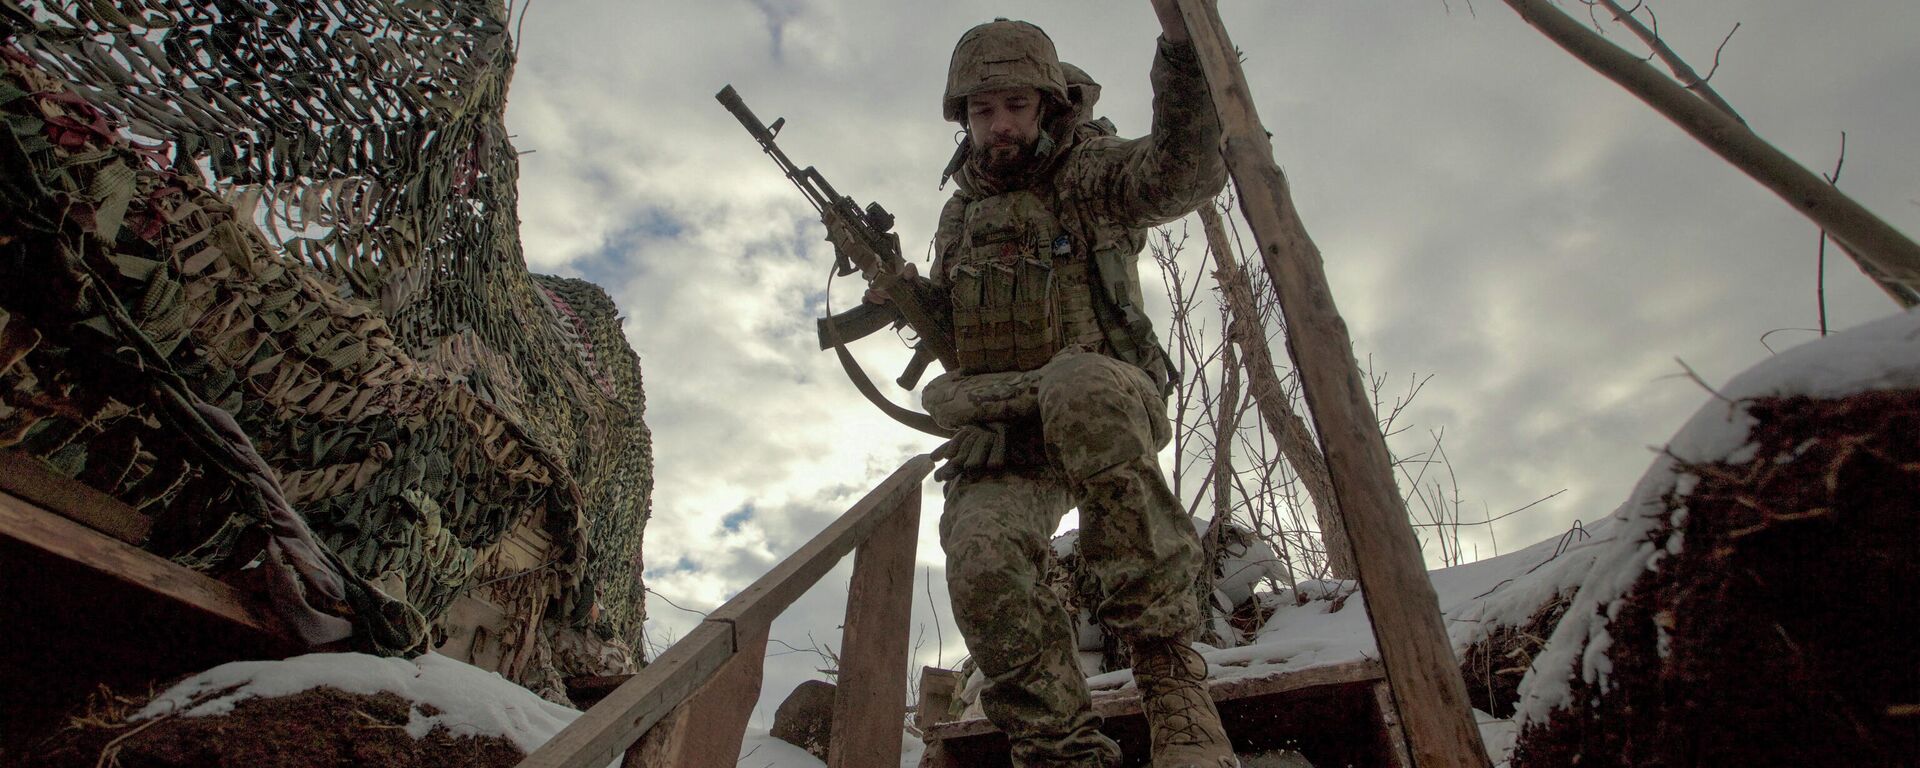 أحد عناصر القوات المسلحة الأوكرانية بالقرب من منطقة دونيتسك، أوكرانيا، 22 يناير 2022 - سبوتنيك عربي, 1920, 28.01.2022